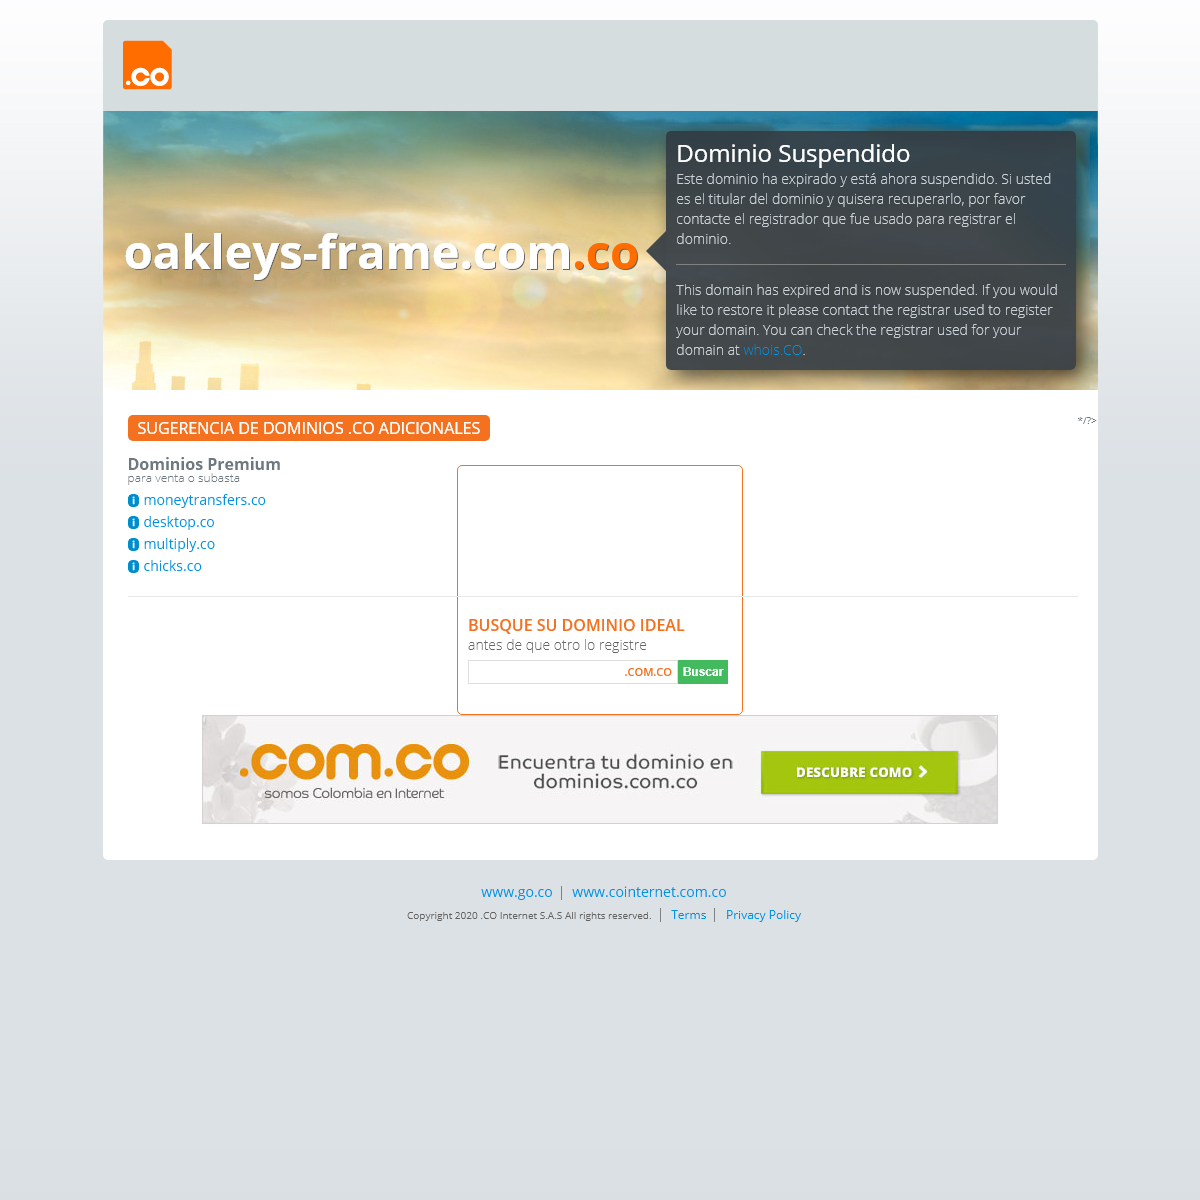 A complete backup of oakleys-frame.com.co